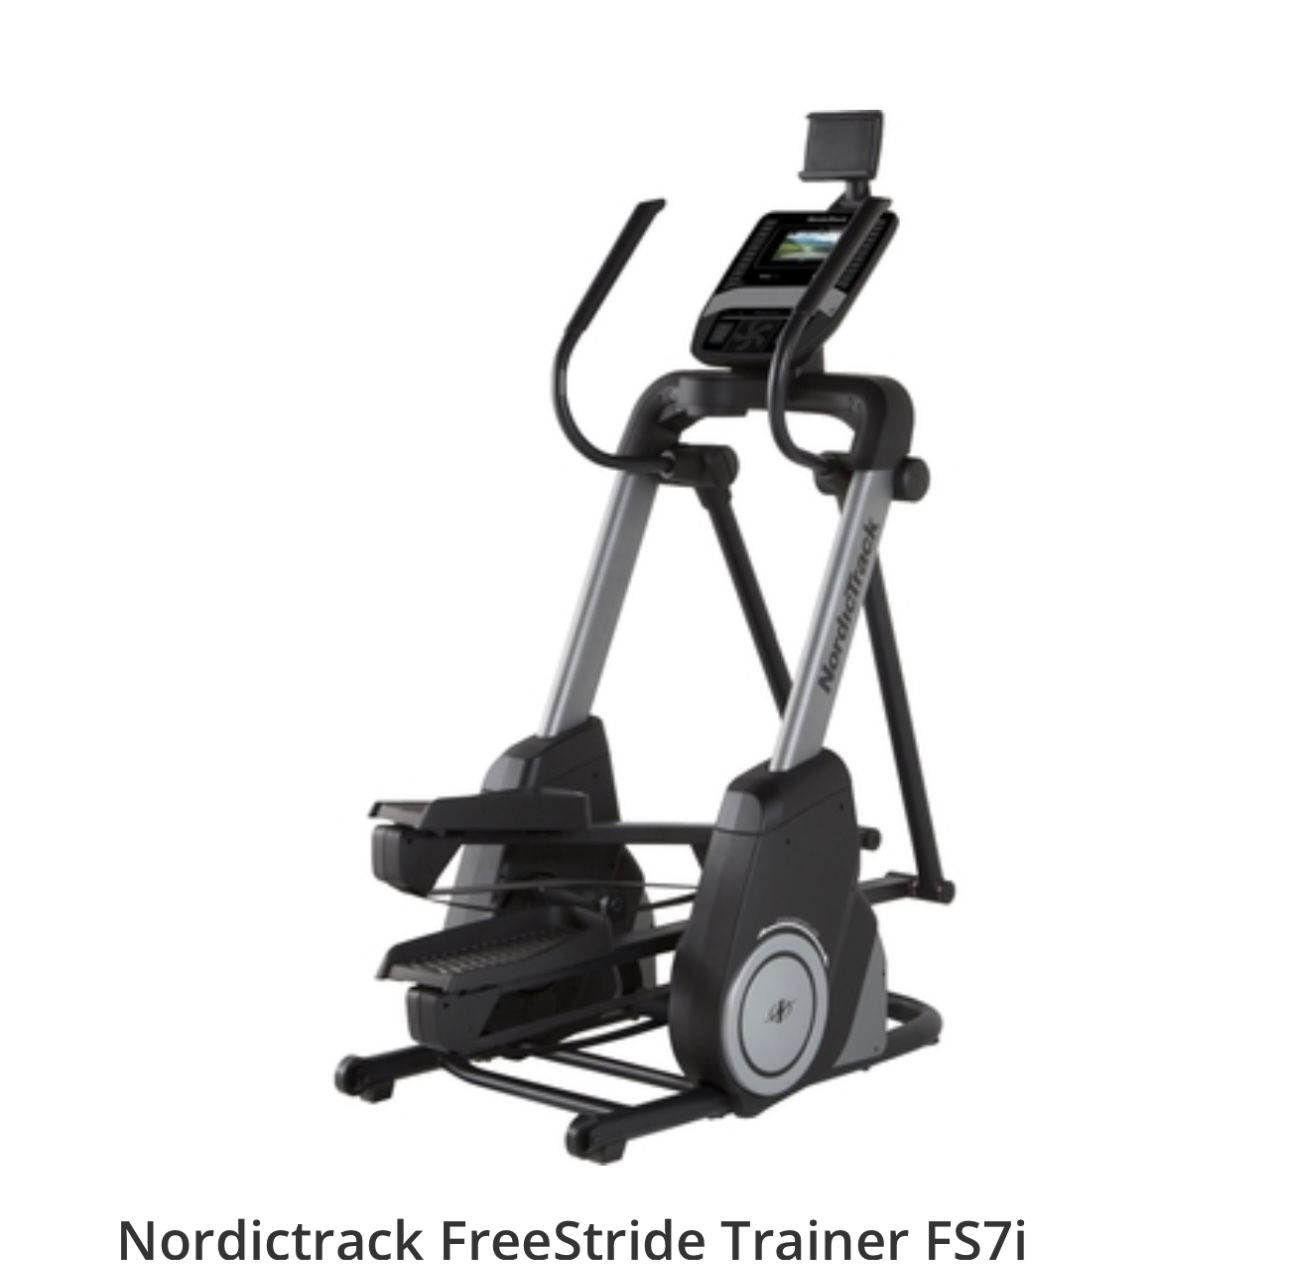 Nordictrack FreeStride Trainer